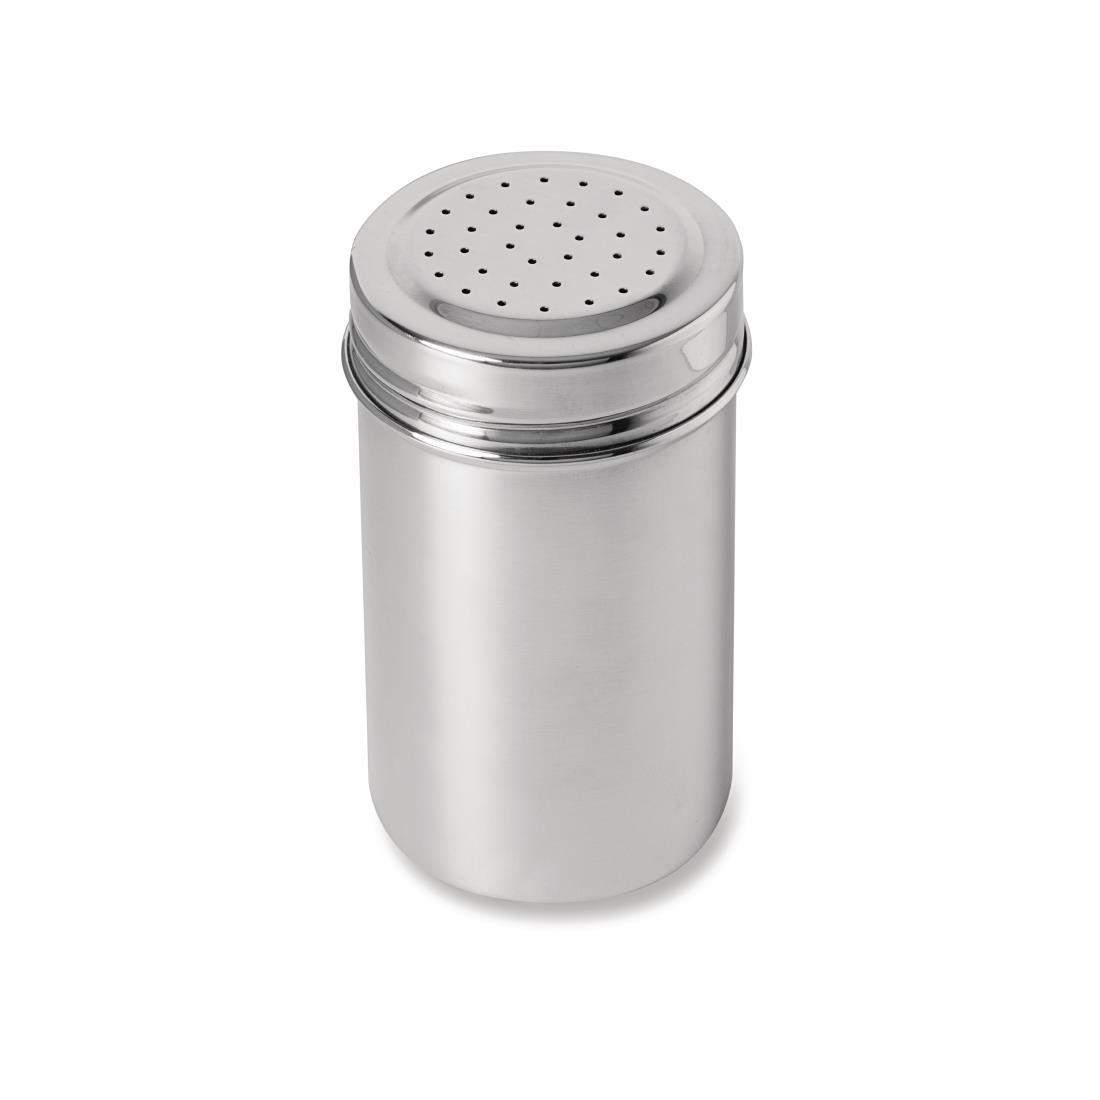 Schneider Small Hole Sugar Dispenser 12.8cm - CS713  - 1